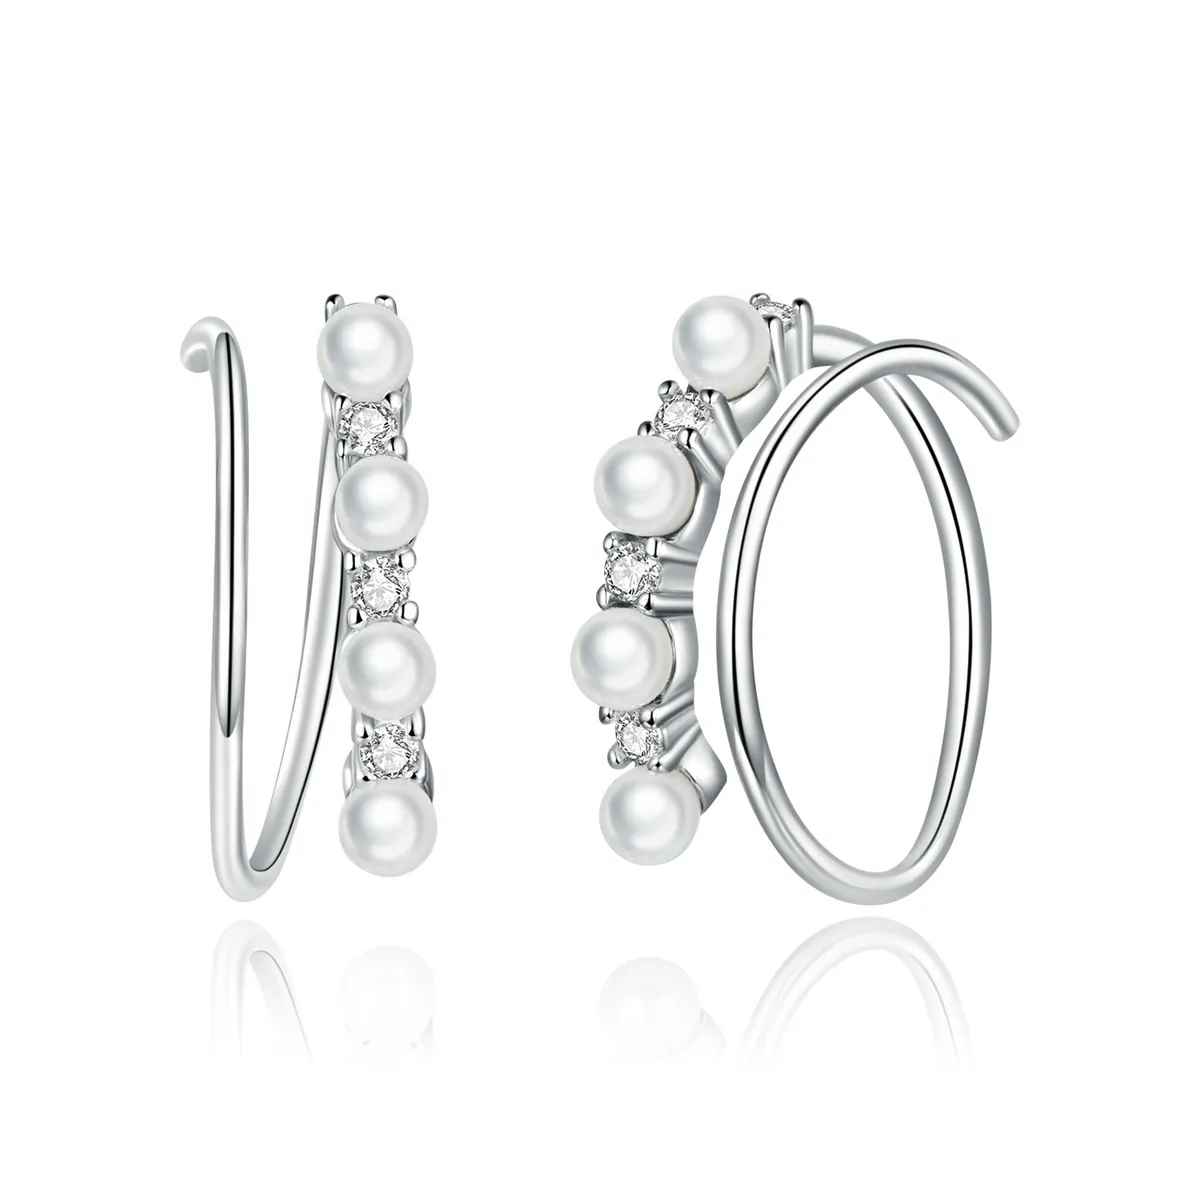 Pandora Style Silver Simple Geometry Hoop Earrings - SCE932